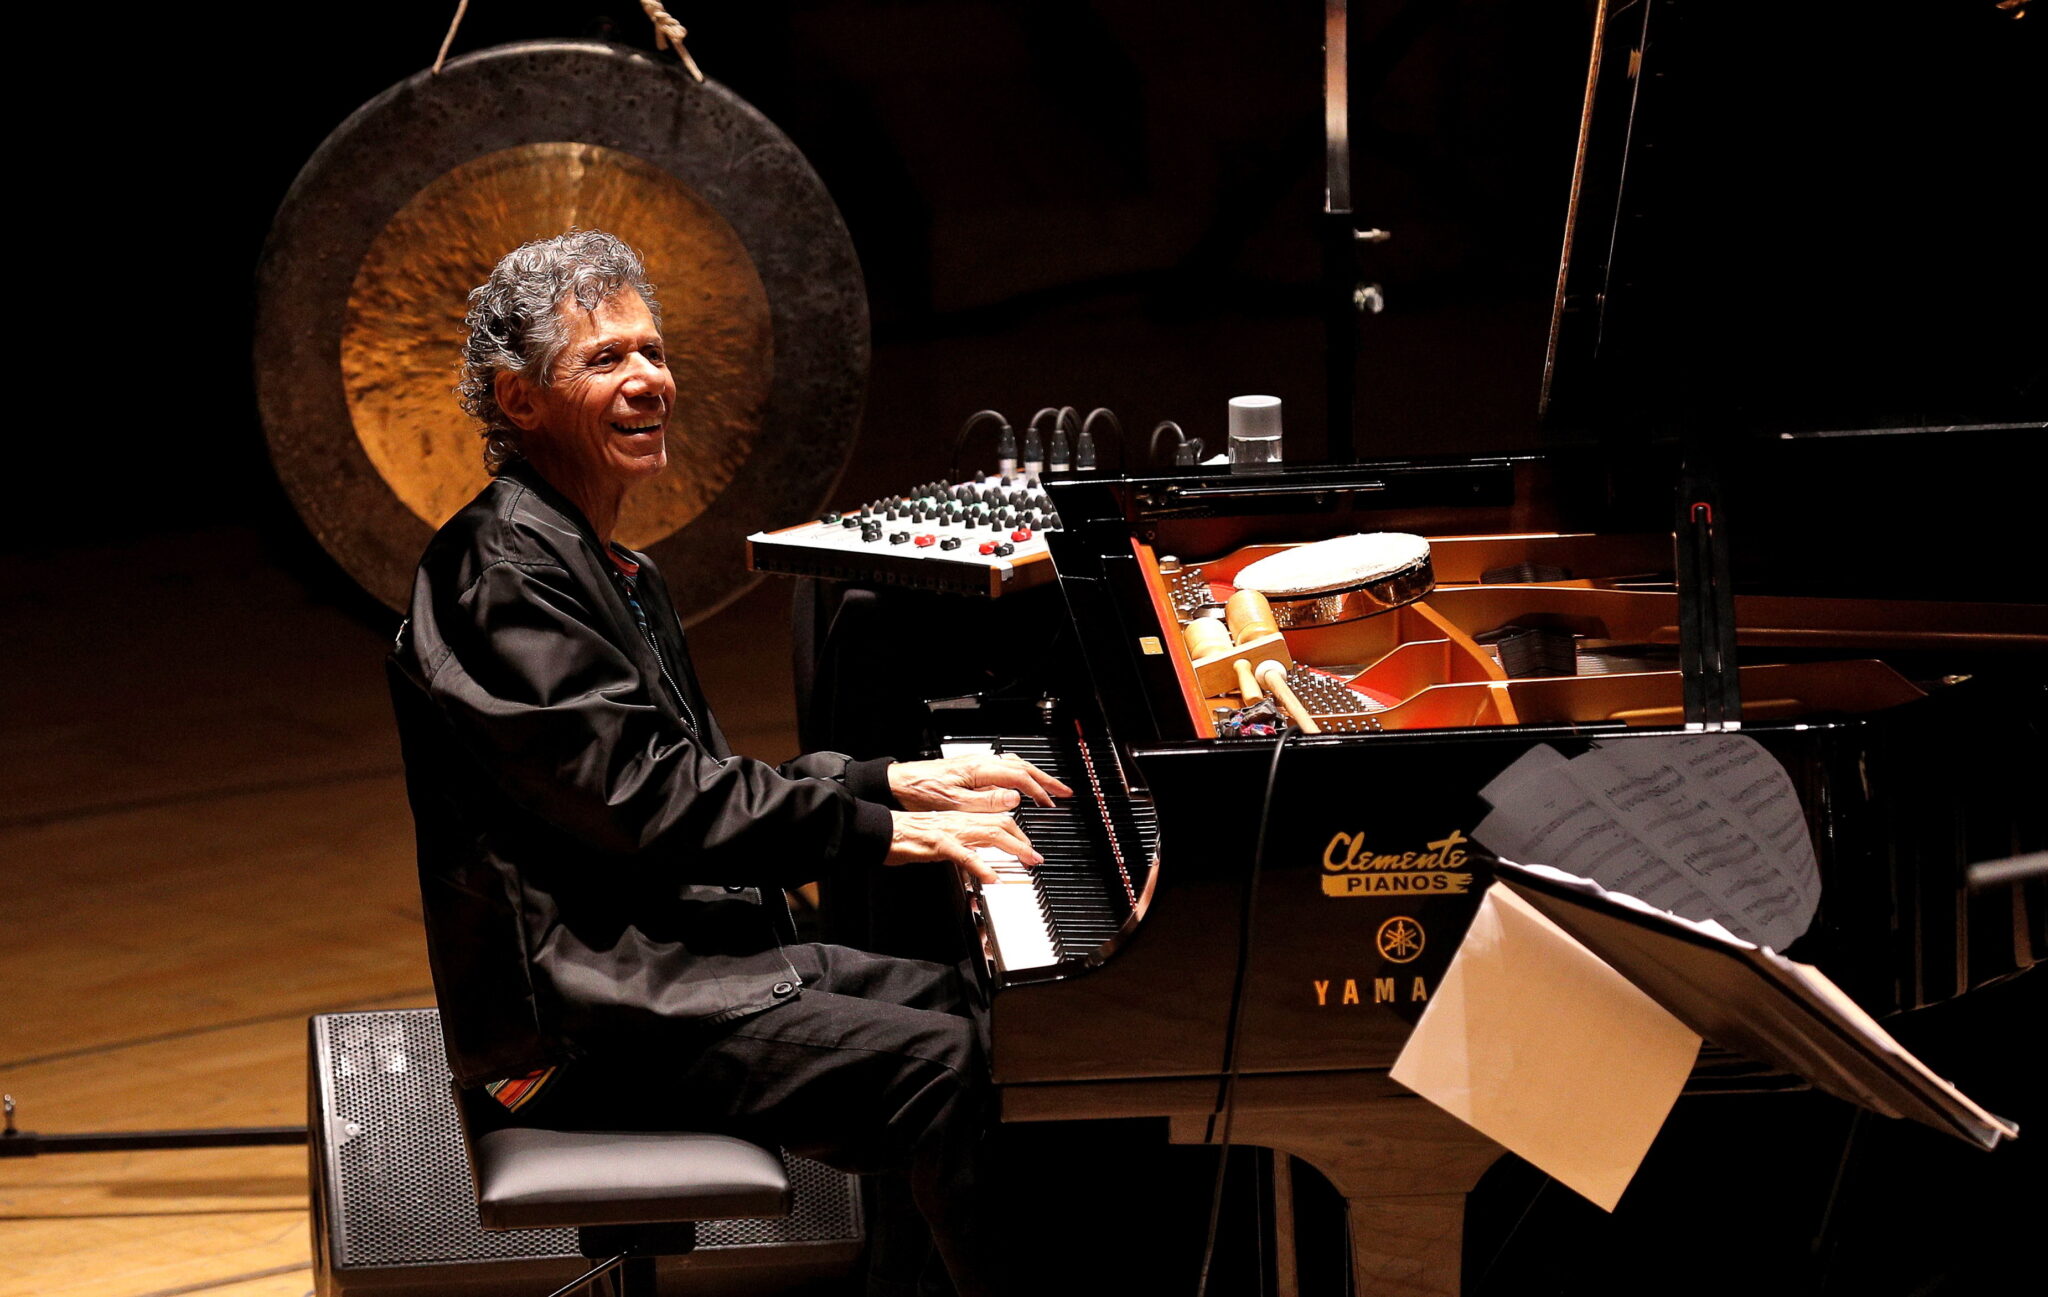 Archiwalne zdjęcie - amerykański pianista Chick Corea podczas koncertu w Palau de Les Arts w Walencji, Chick Corea zmarł 2 dni temu, w wieku 79 lat, fot. EPA / Juan Carlos Cardenas